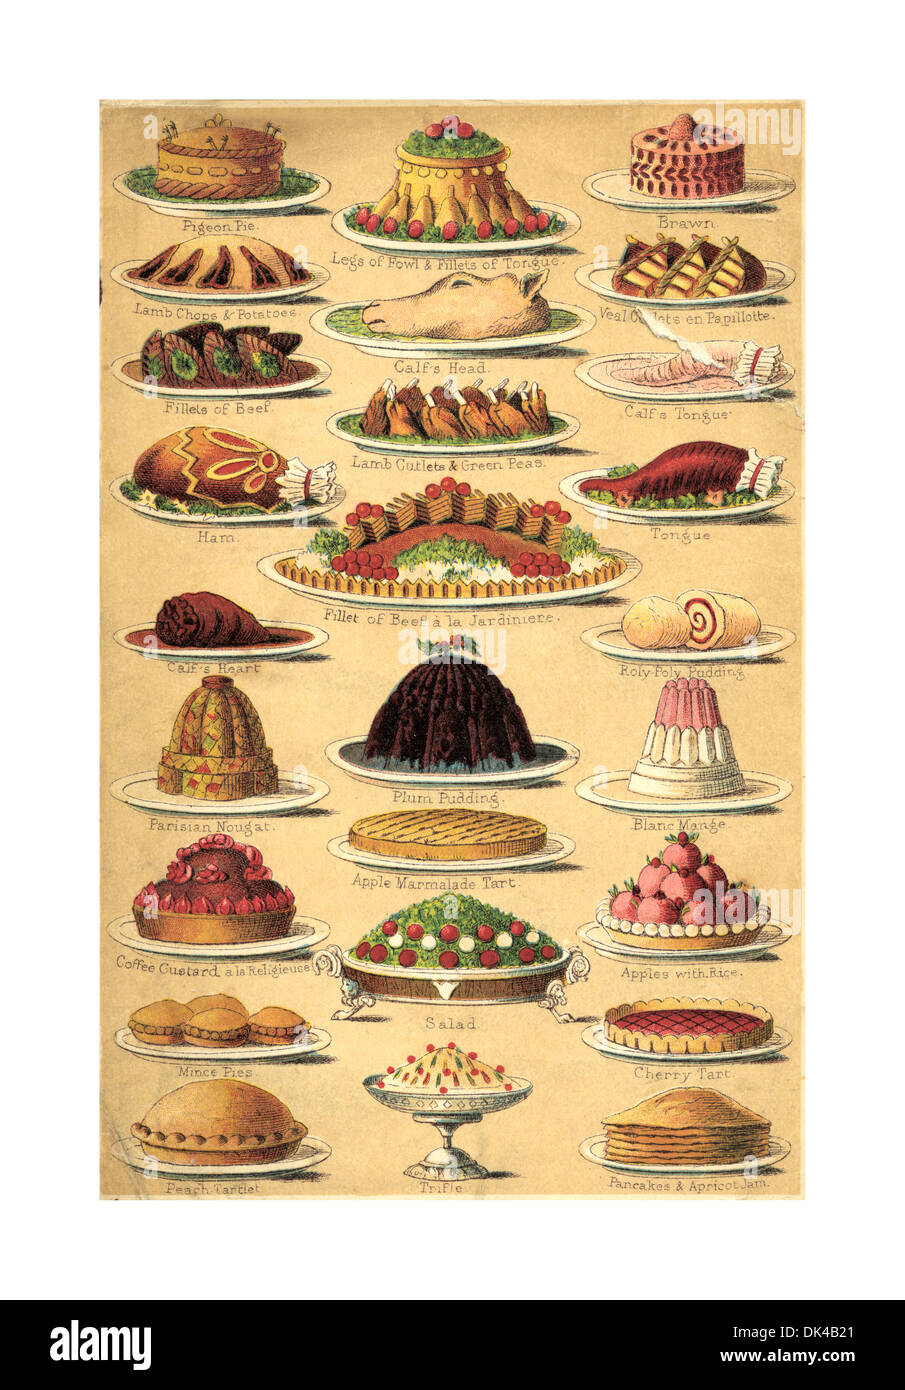 PUDDINGS de Noël victorien Vintage Livre de Cuisine 1890 lithographie illustrant la page variété d'aliments, y compris Noël gâteaux poudings tartes et viandes Banque D'Images